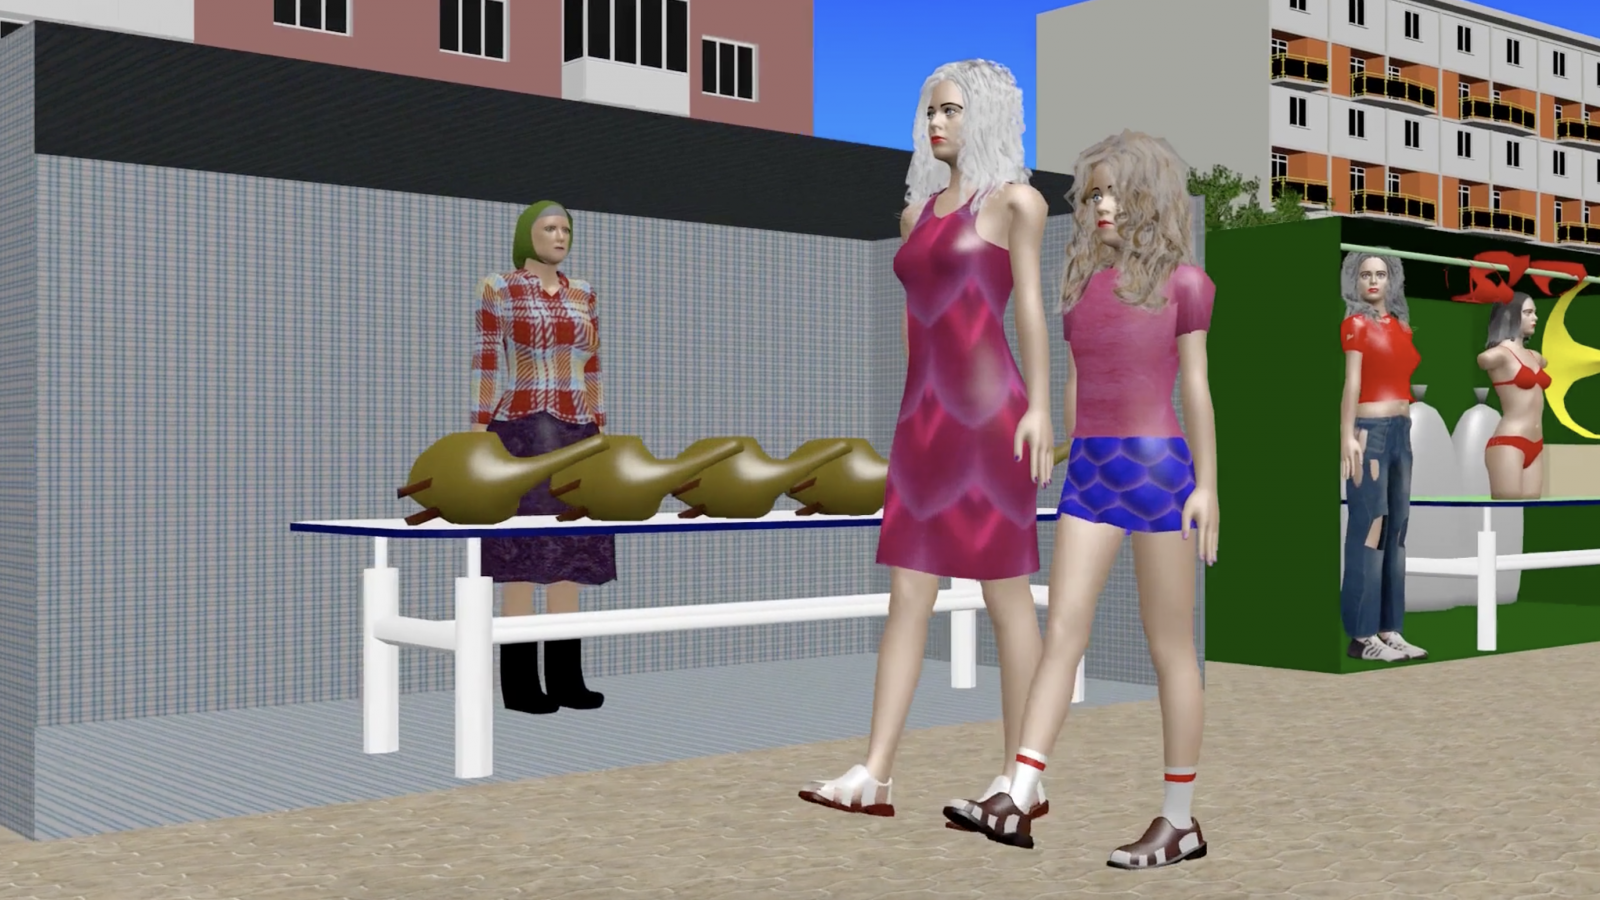 rus: Низькополігональні моделі: дві жіночки проходять повз стіл із гусками, за яким стоїть стара жінка.